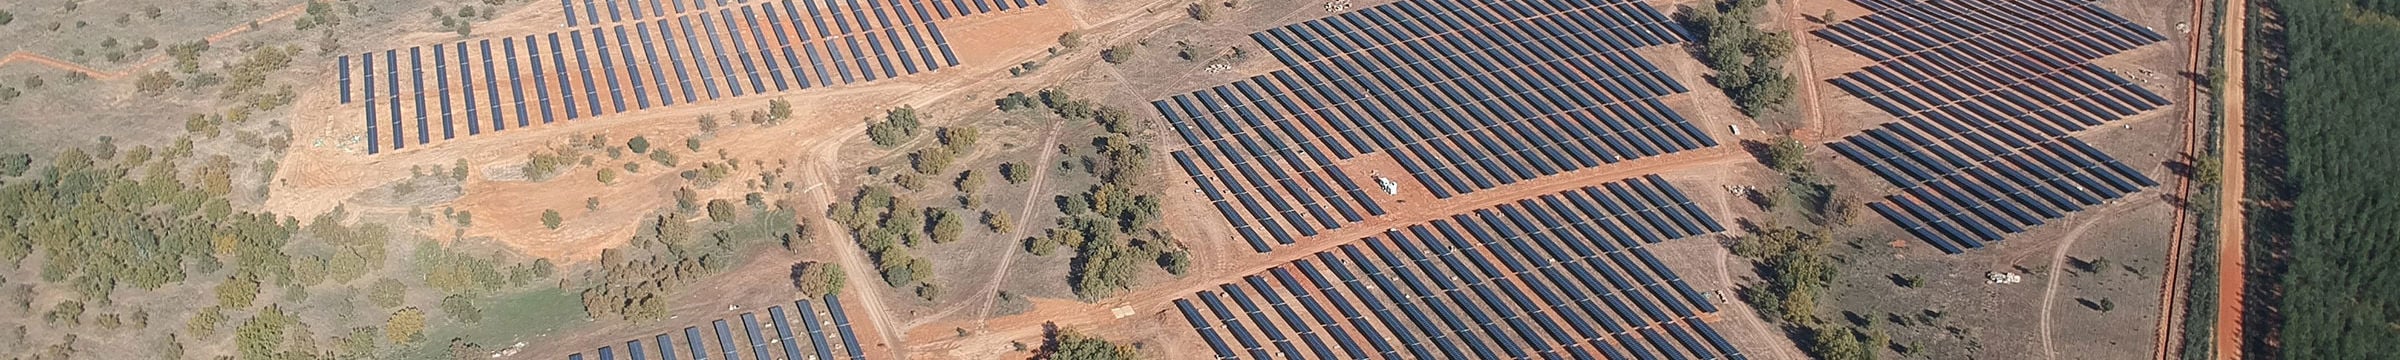 Santiz solar park in Spain